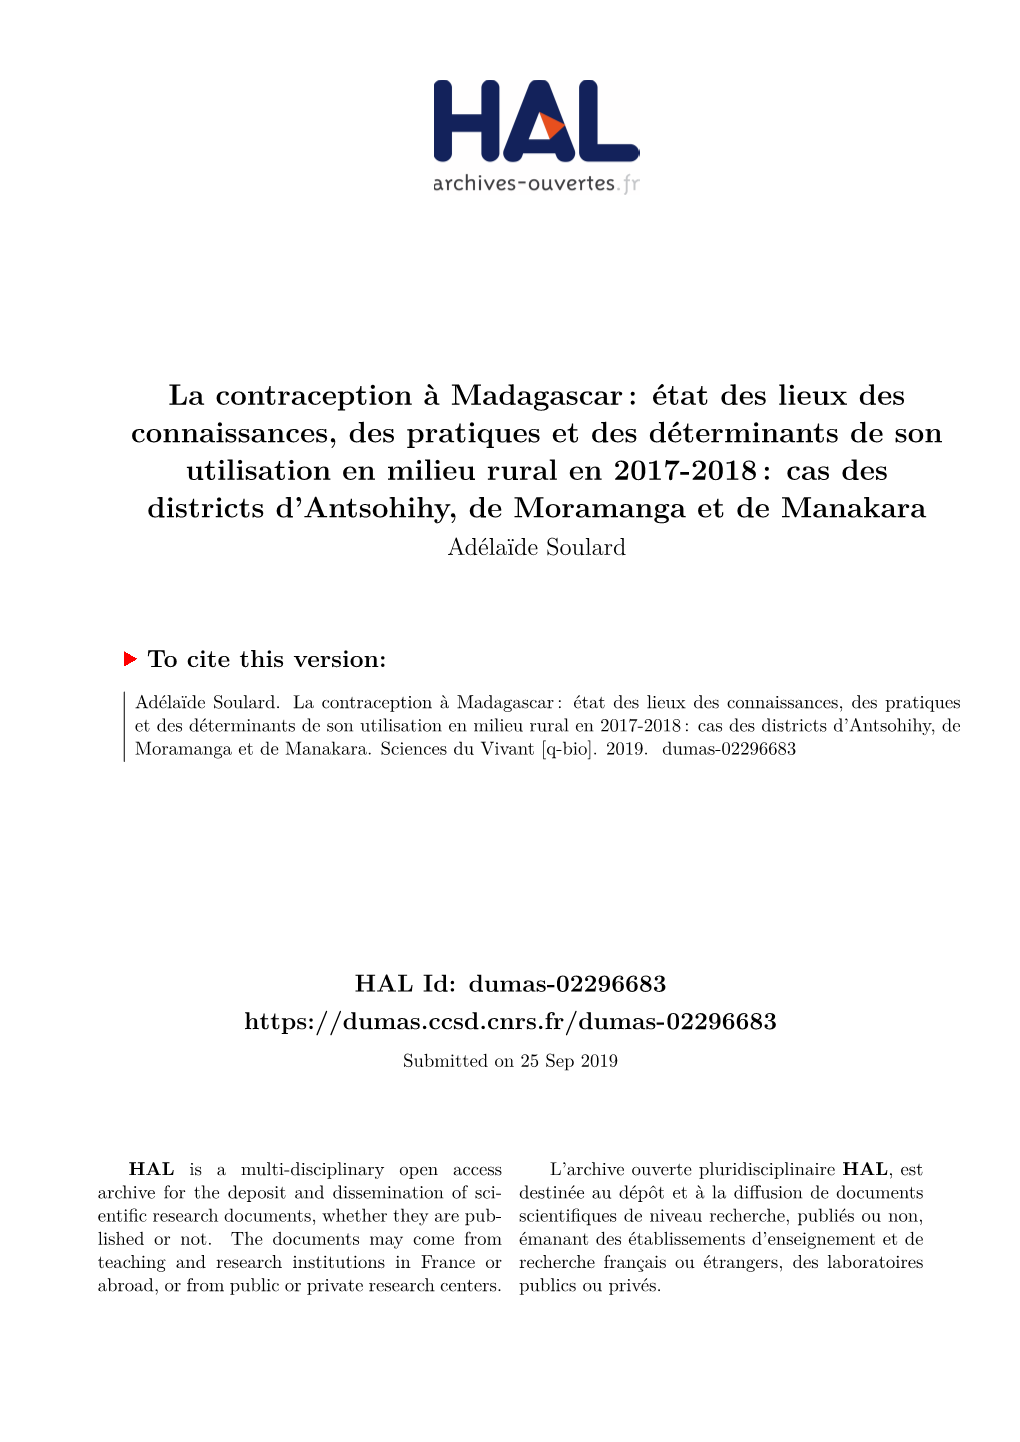 La Contraception À Madagascar: État Des Lieux Des Connaissances, Des Pratiques Et Des Déterminants De Son Utilisation En Mili